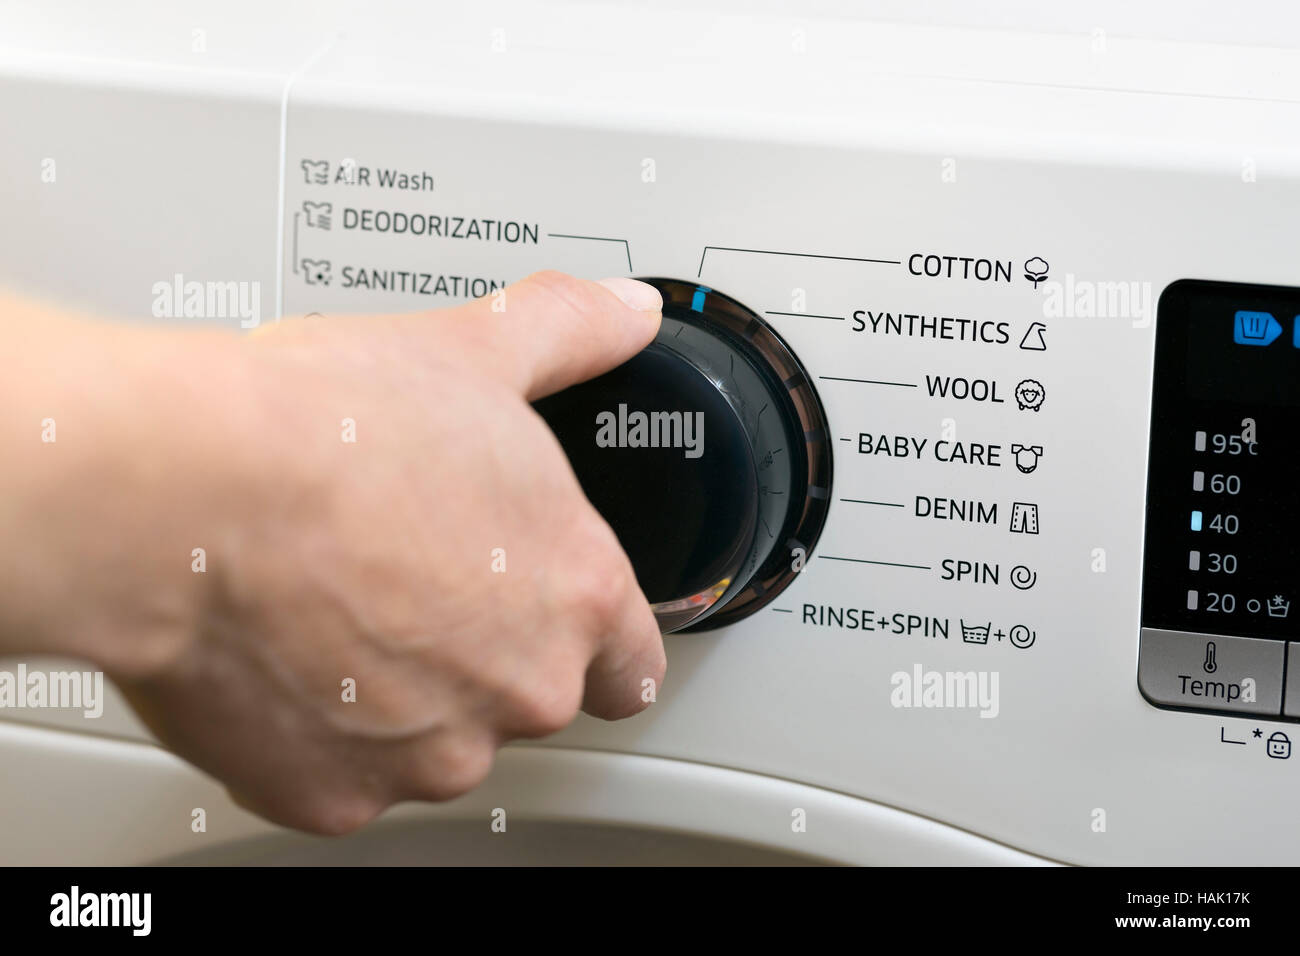 laundry day - setting up washing machine program Stock Photo